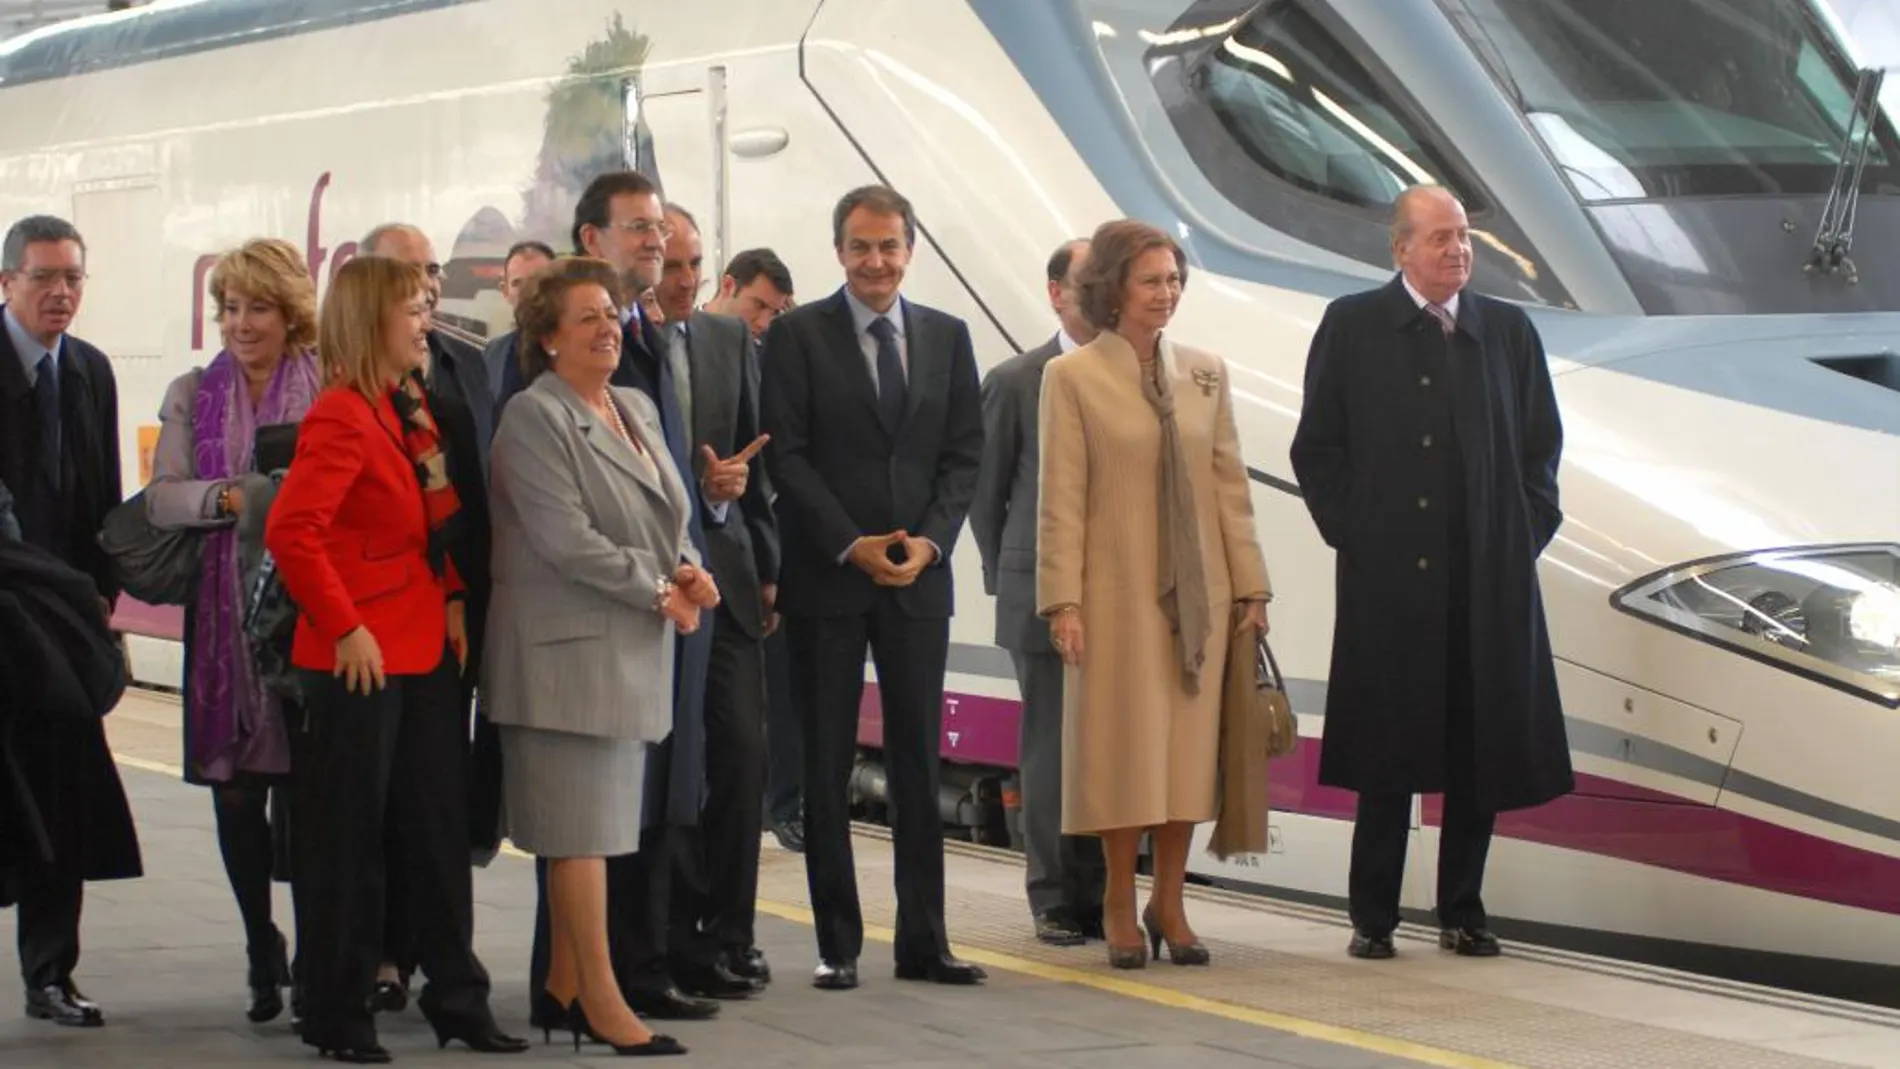 Rita Barberá, Mariano Rajoy, José Luis Rodríguez Zapatero y los Reyes don Juan Carlos y doña Sofía, el día de la inauguración del AVE Madrid-Valencia